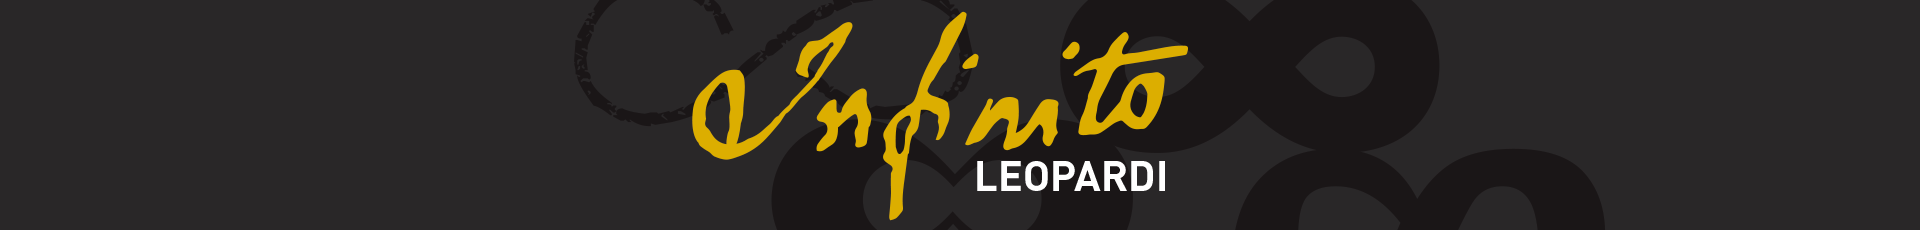 Infinito Leopardi ha emozionato oltre 14mila visitatori